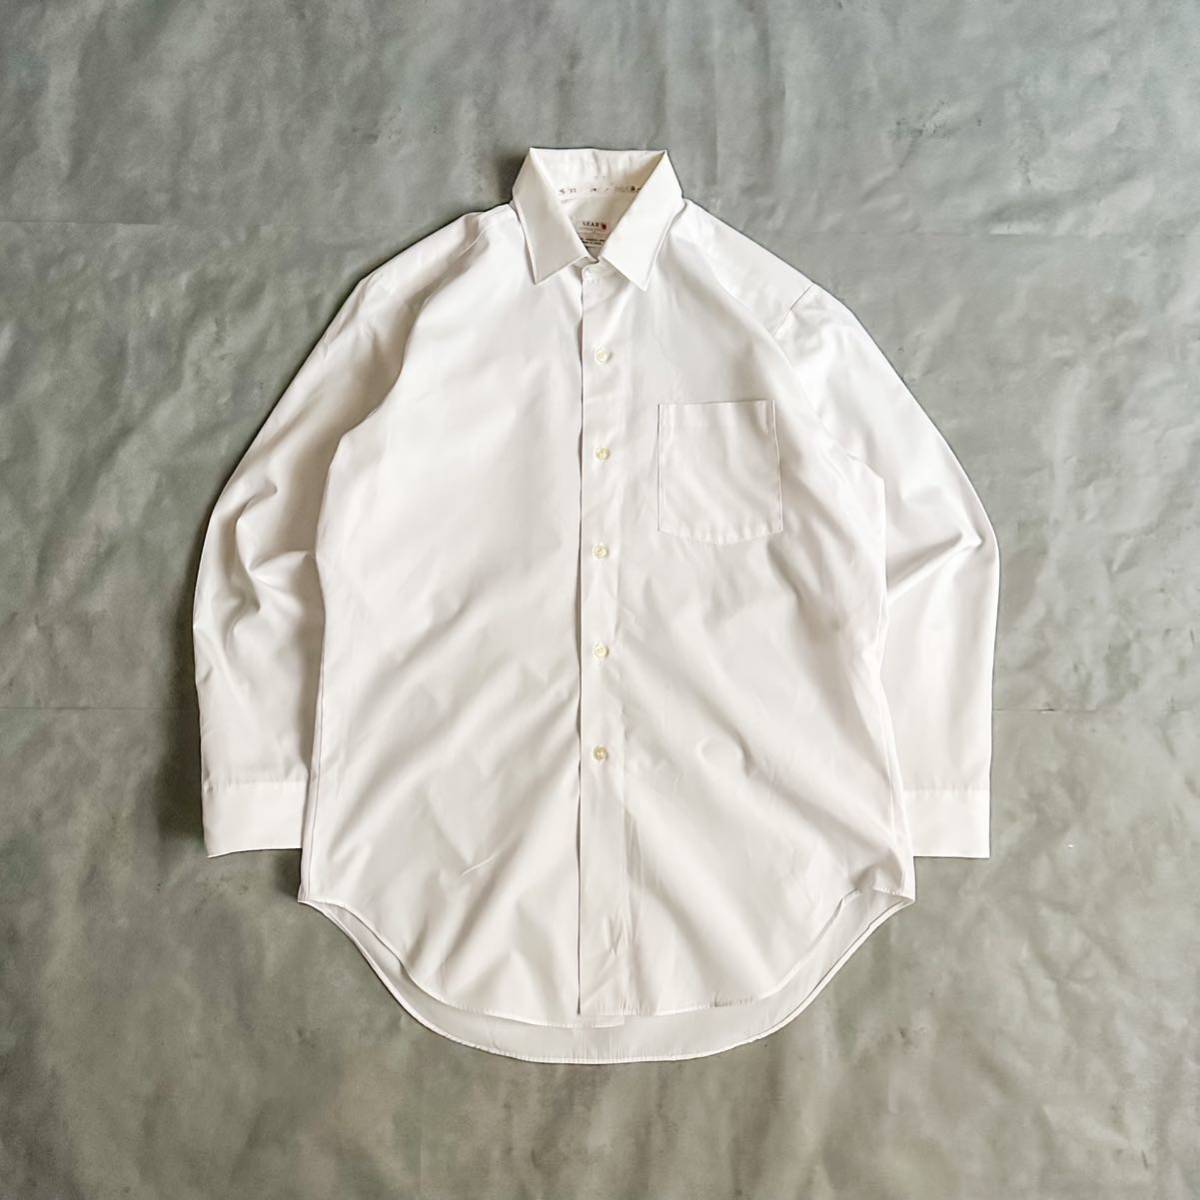 ヴィンテージ 60s SEARS シアーズ 日本製 PERMA PREST ホワイト 白シャツ / 古着 ビンテージ 長袖シャツ ドレスシャツ 50s 70s USA製